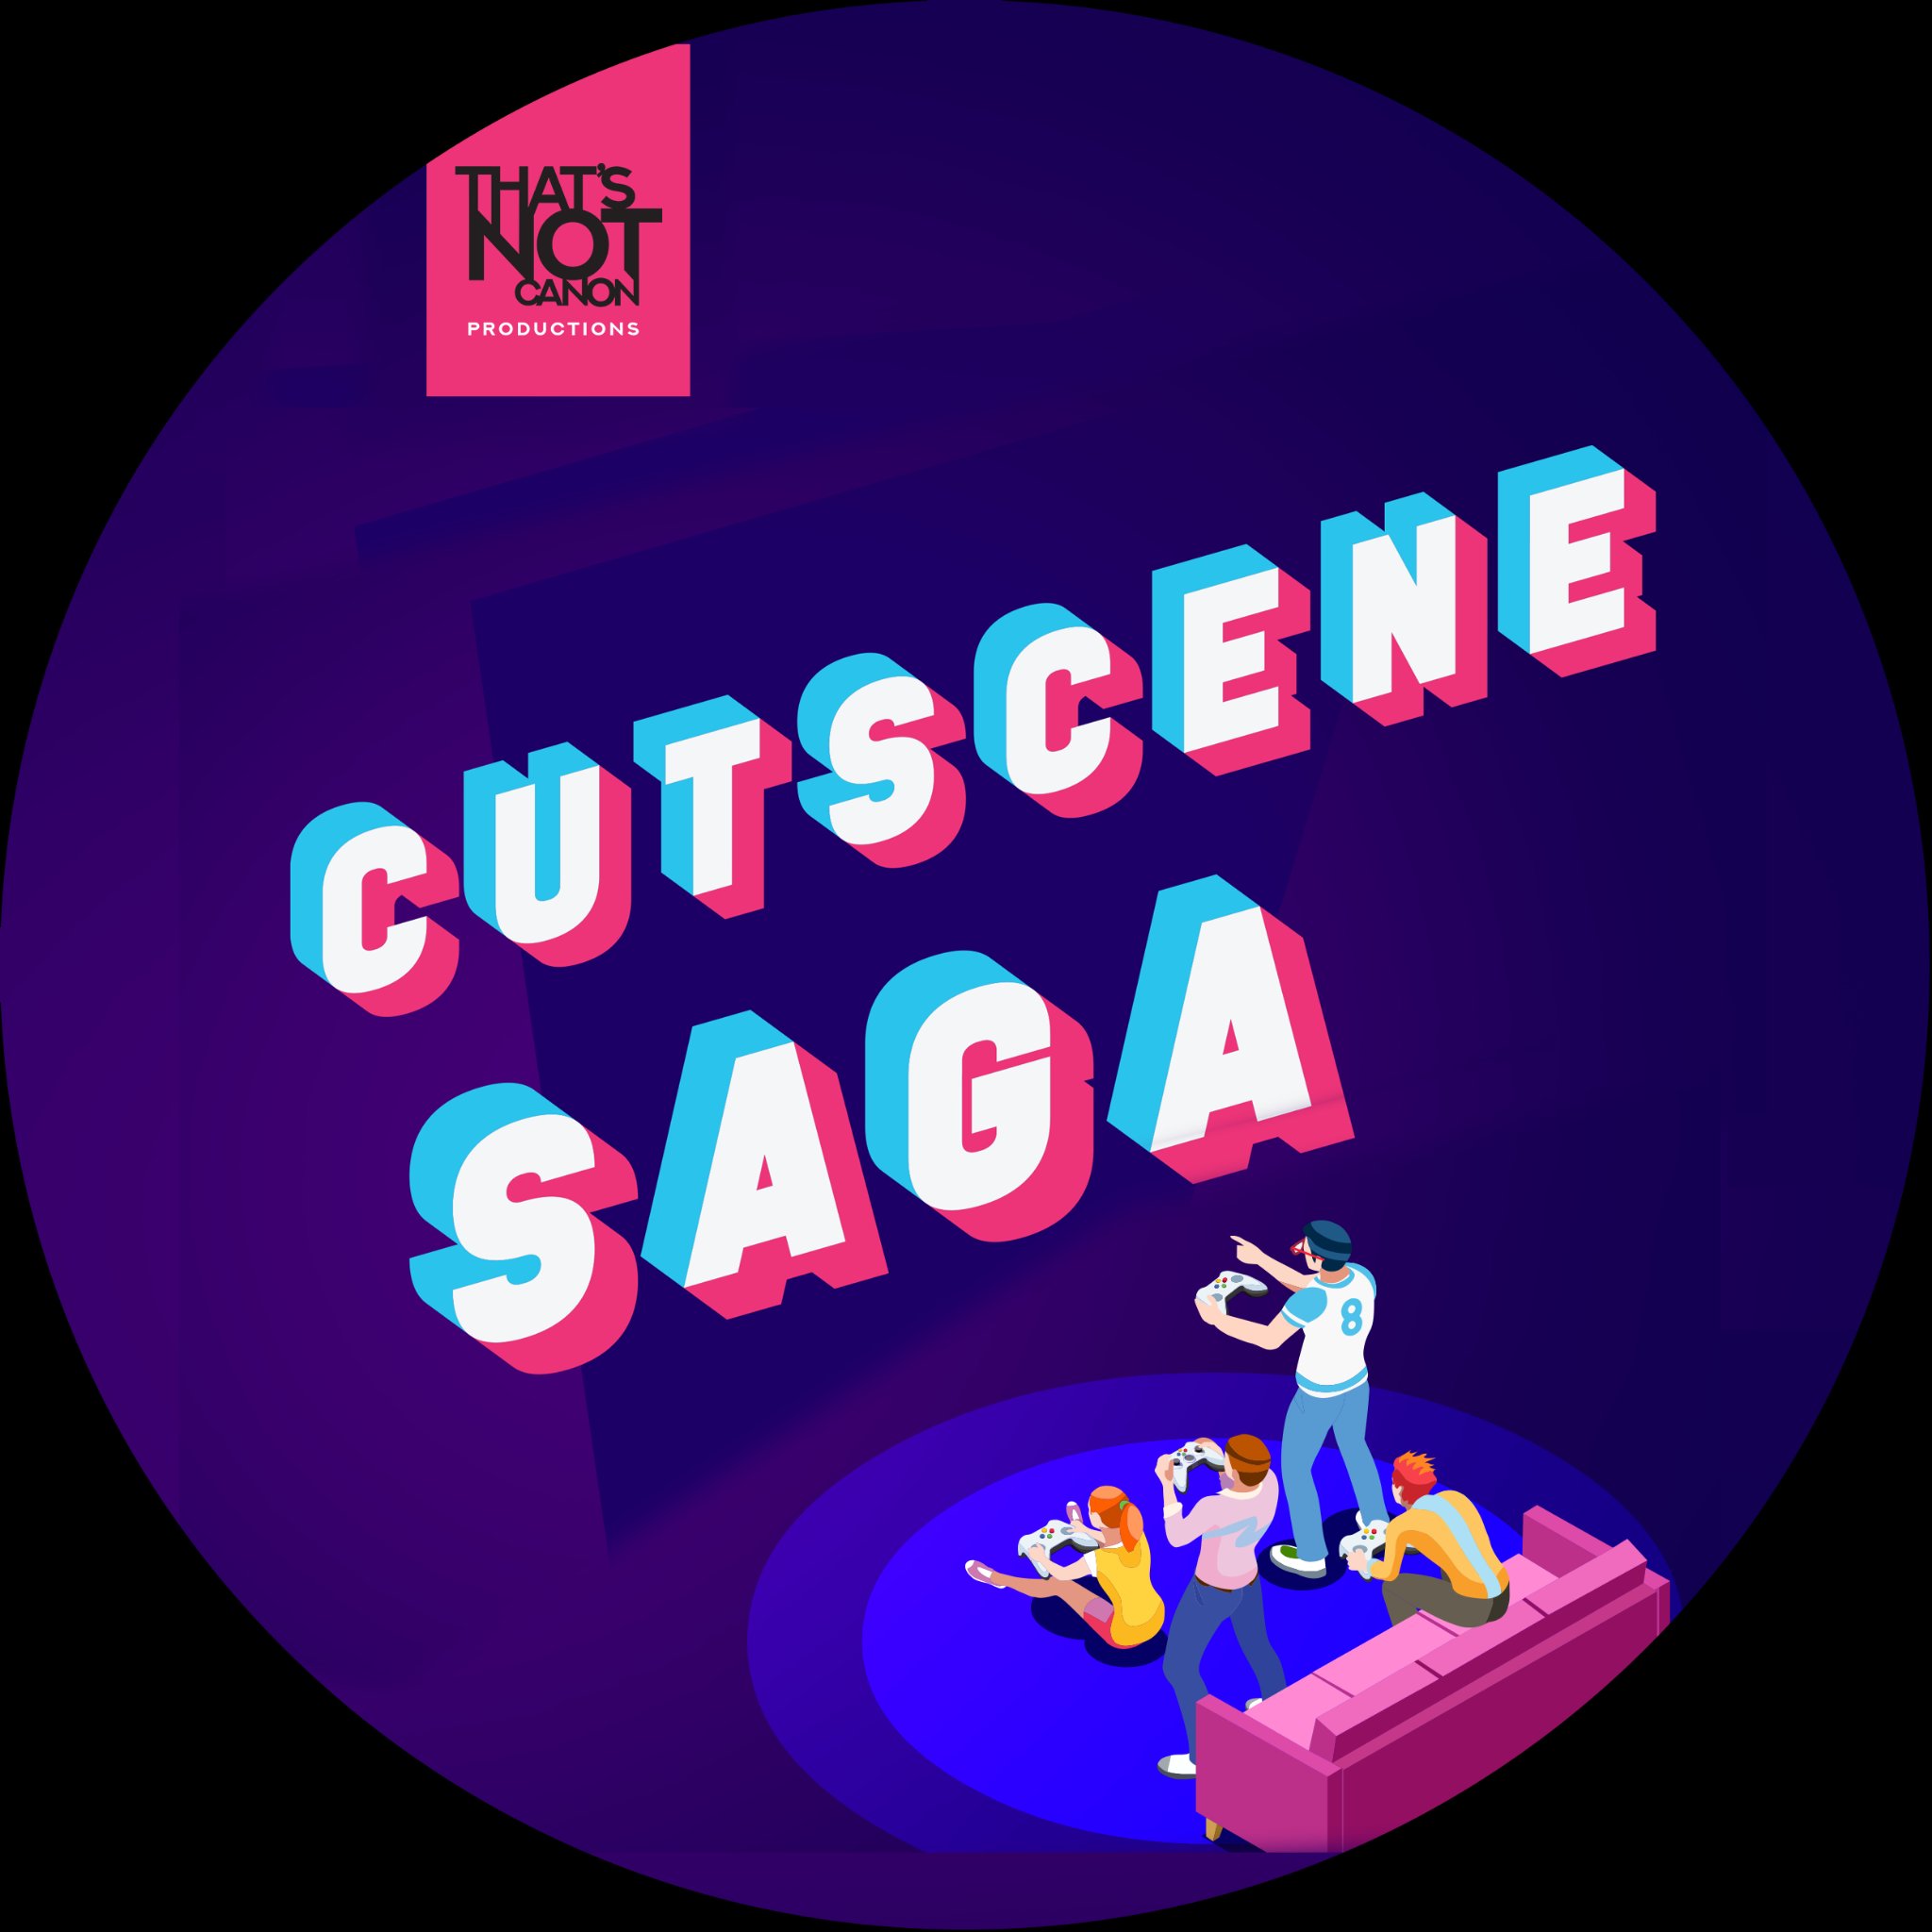 Cutscene Saga is like a book club, but for video games.